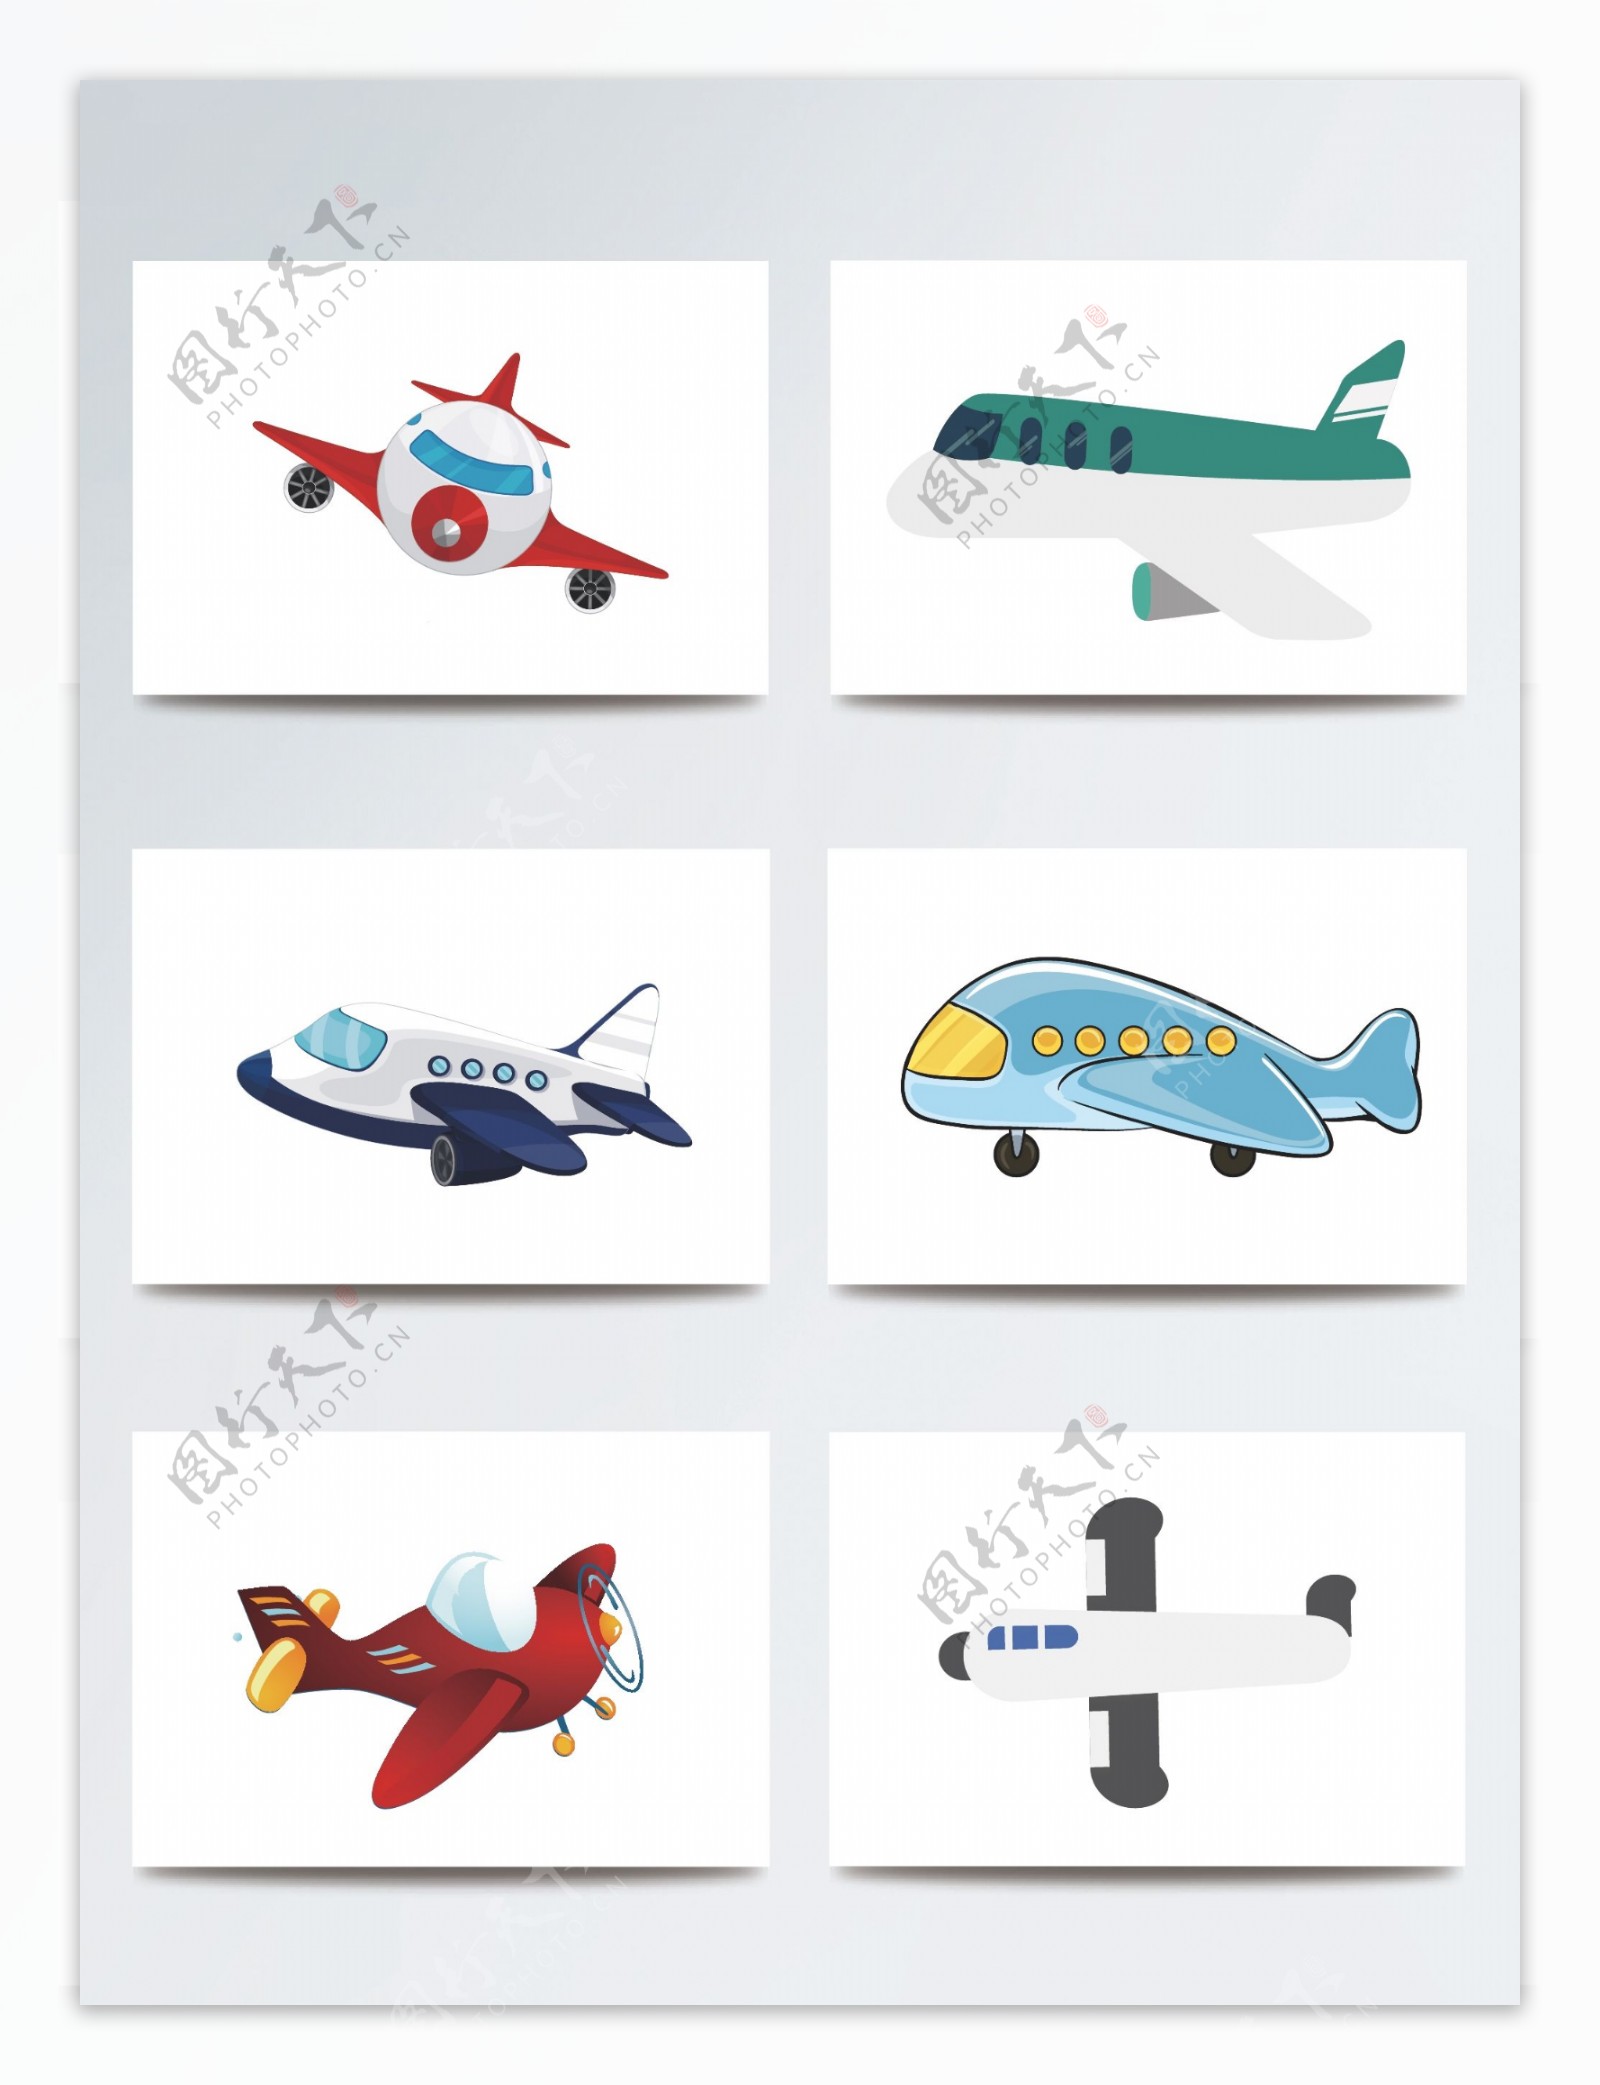 卡通矢量飞机插画图